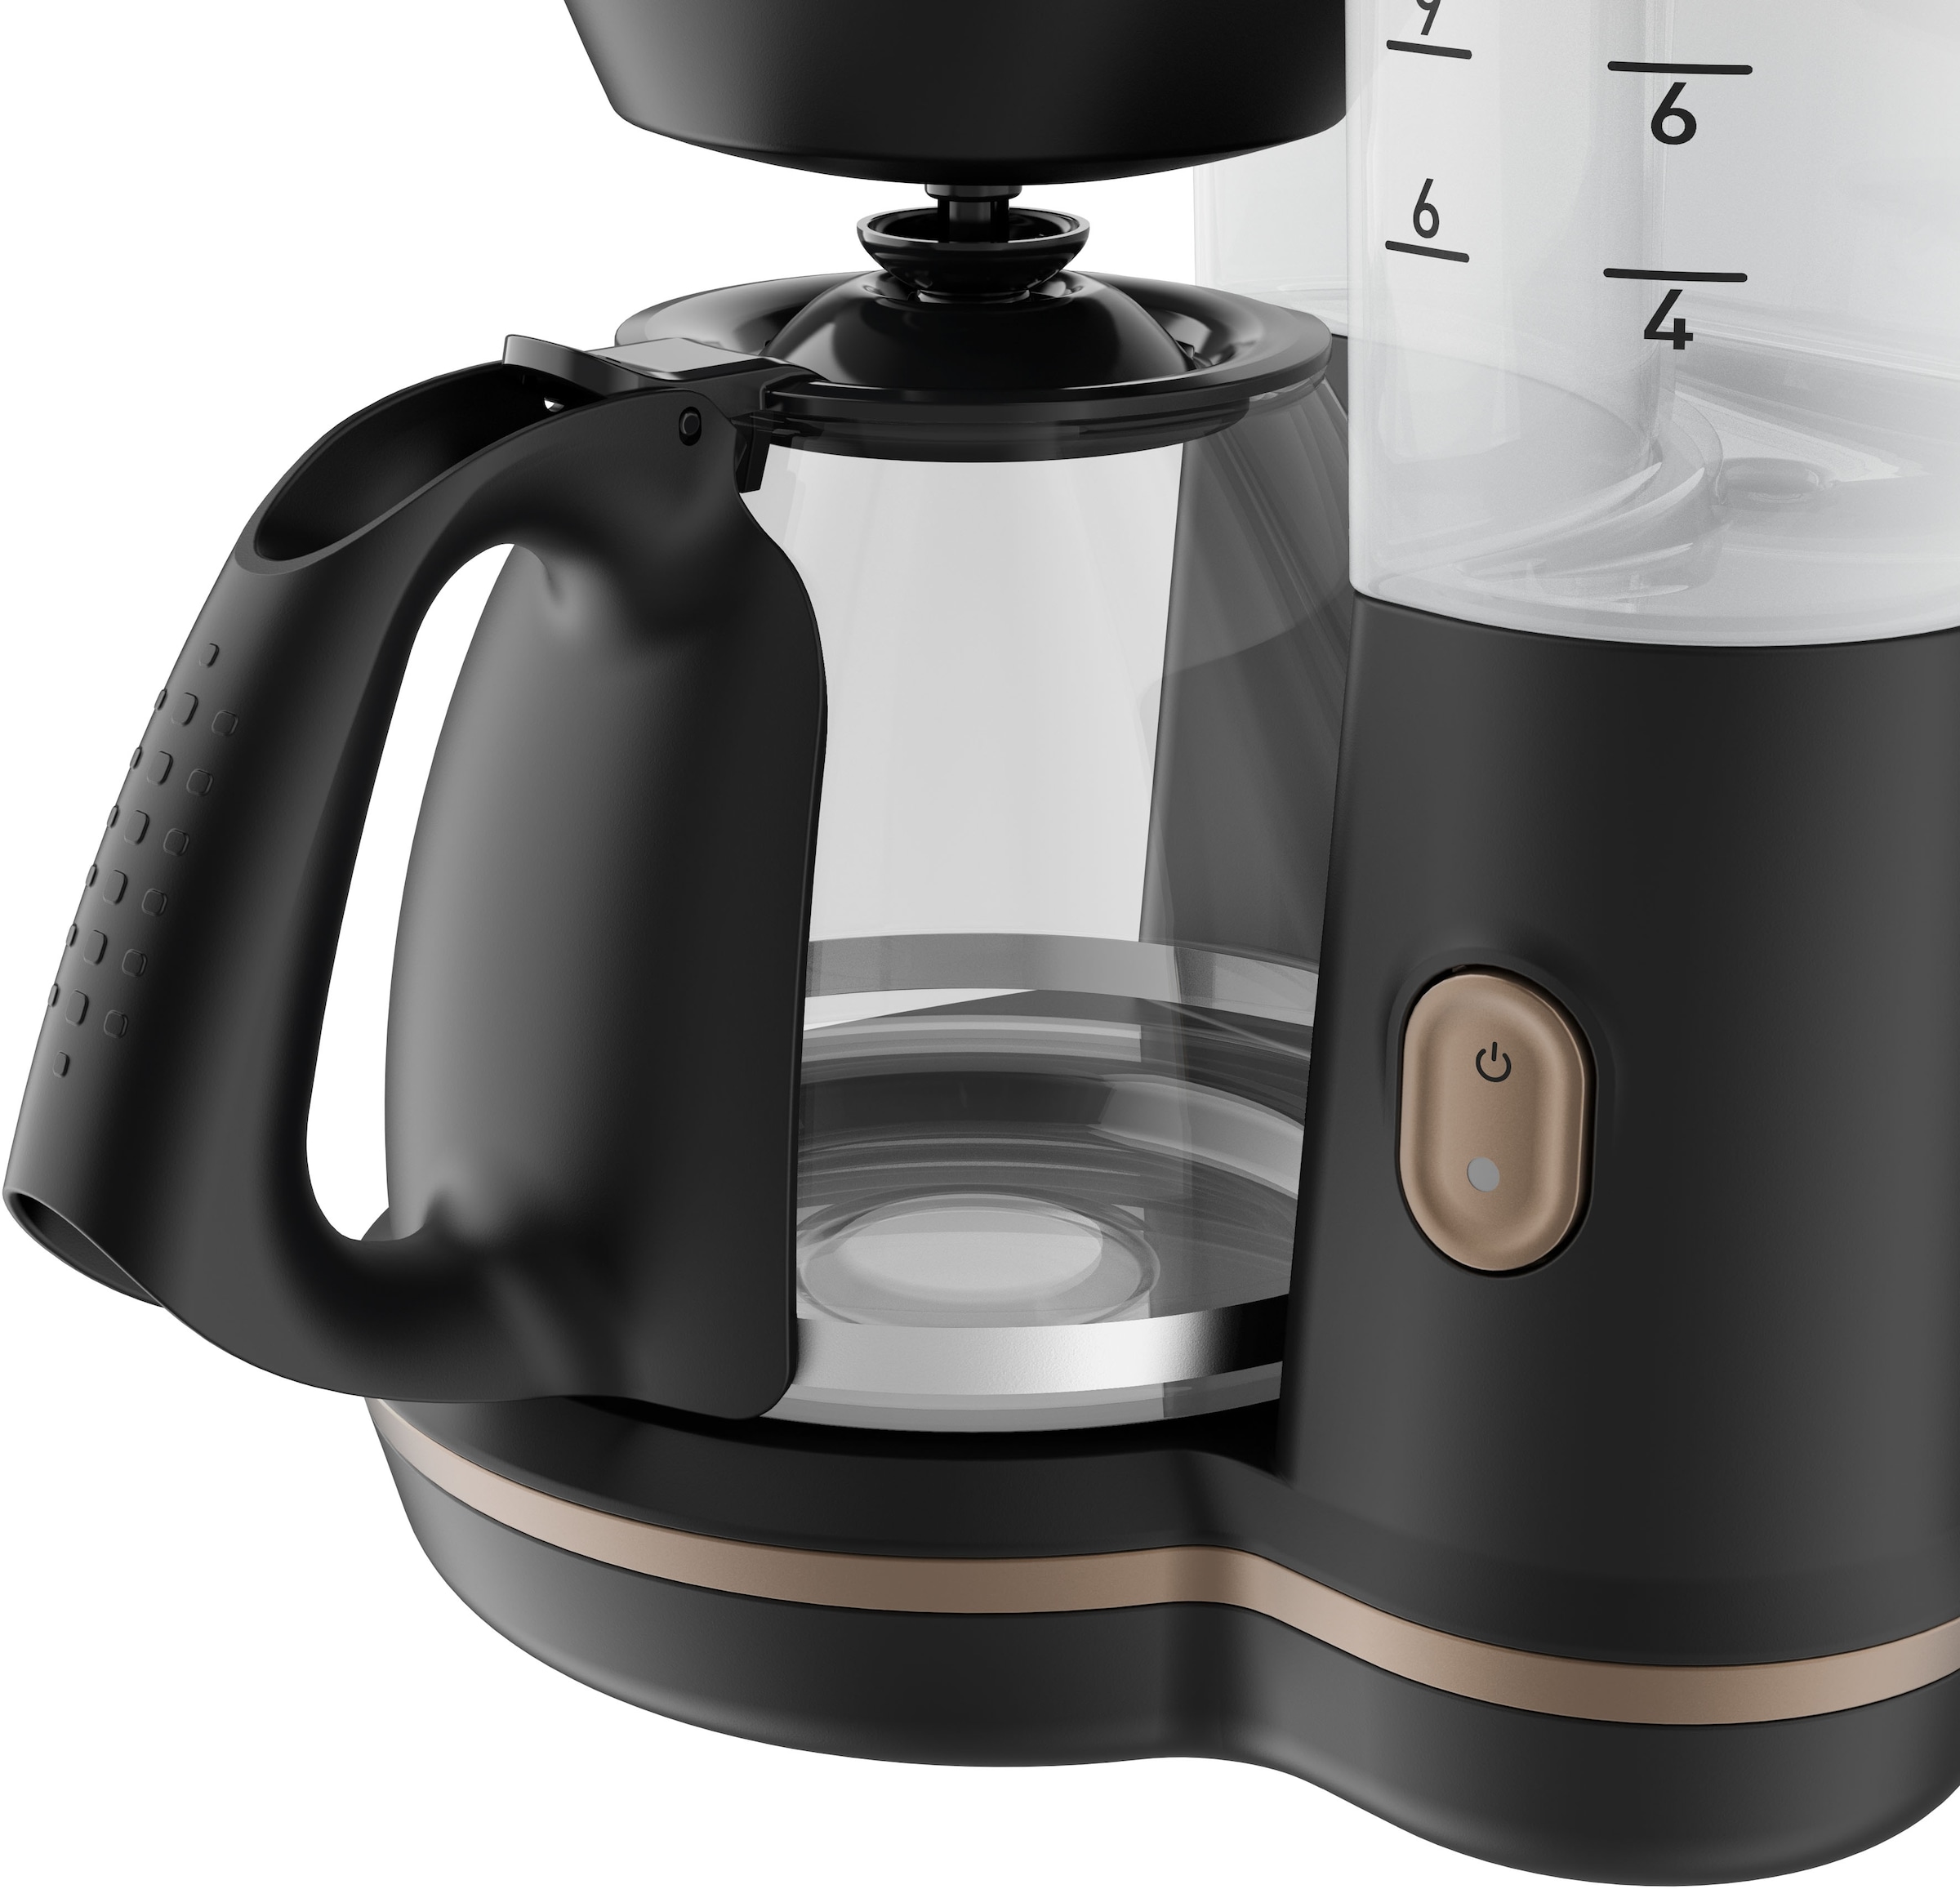 Tefal Filterkaffeemaschine »CM5338 Incluedo«, 1,25 l Kaffeekanne, 1,25 L,  10 - 15 Tassen, herausnehmbarer Filtereinsatz mit zwei Griffen mit 3 Jahren  XXL Garantie